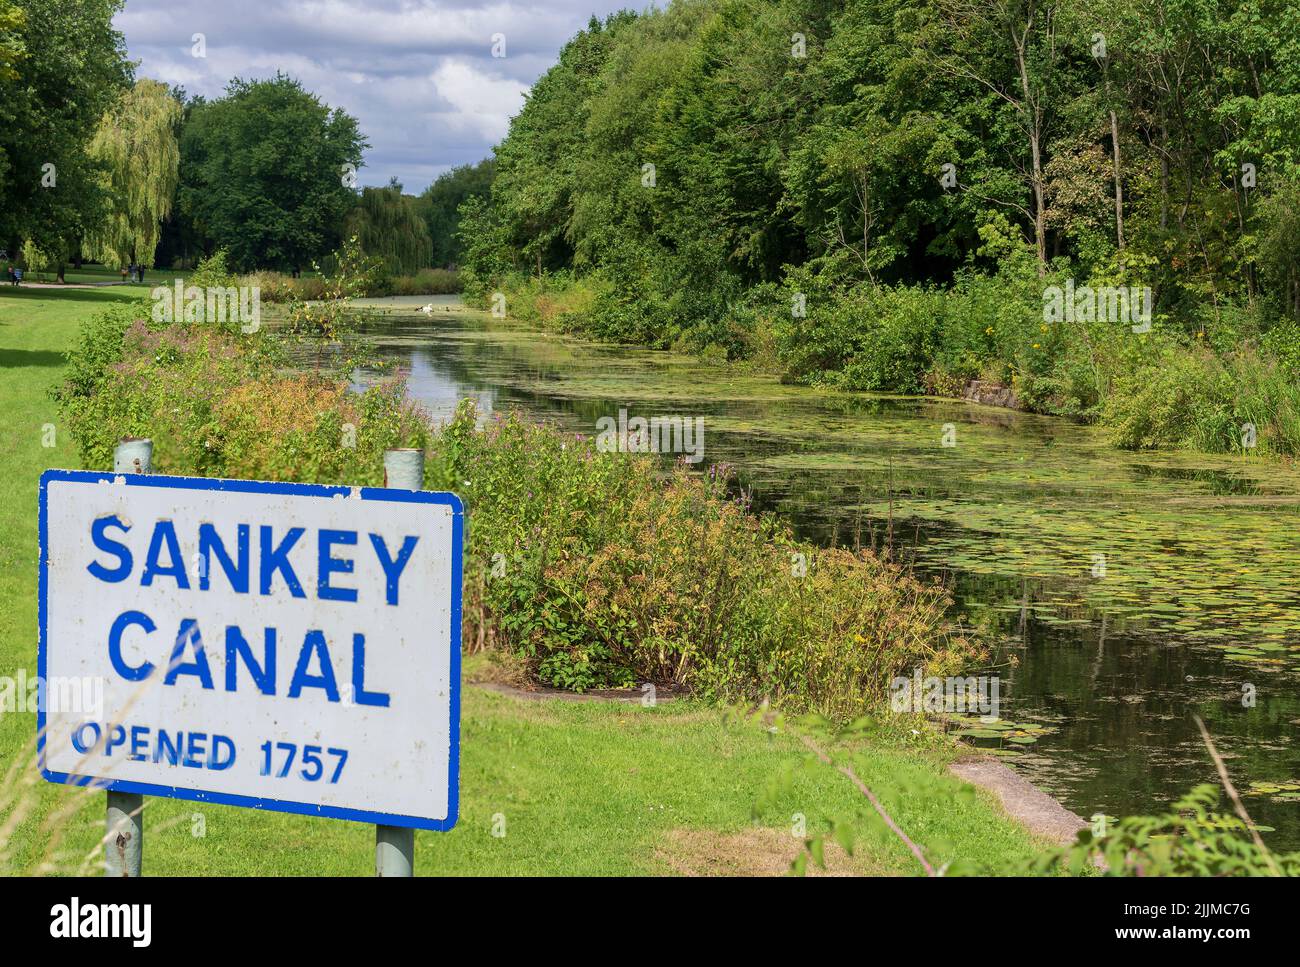 Parc linéaire de la vallée de Sankey à Warrington construit le long de l'ancien canal de Sankey datant de 1757. Probablement le premier canal de la révolution industrielle Banque D'Images